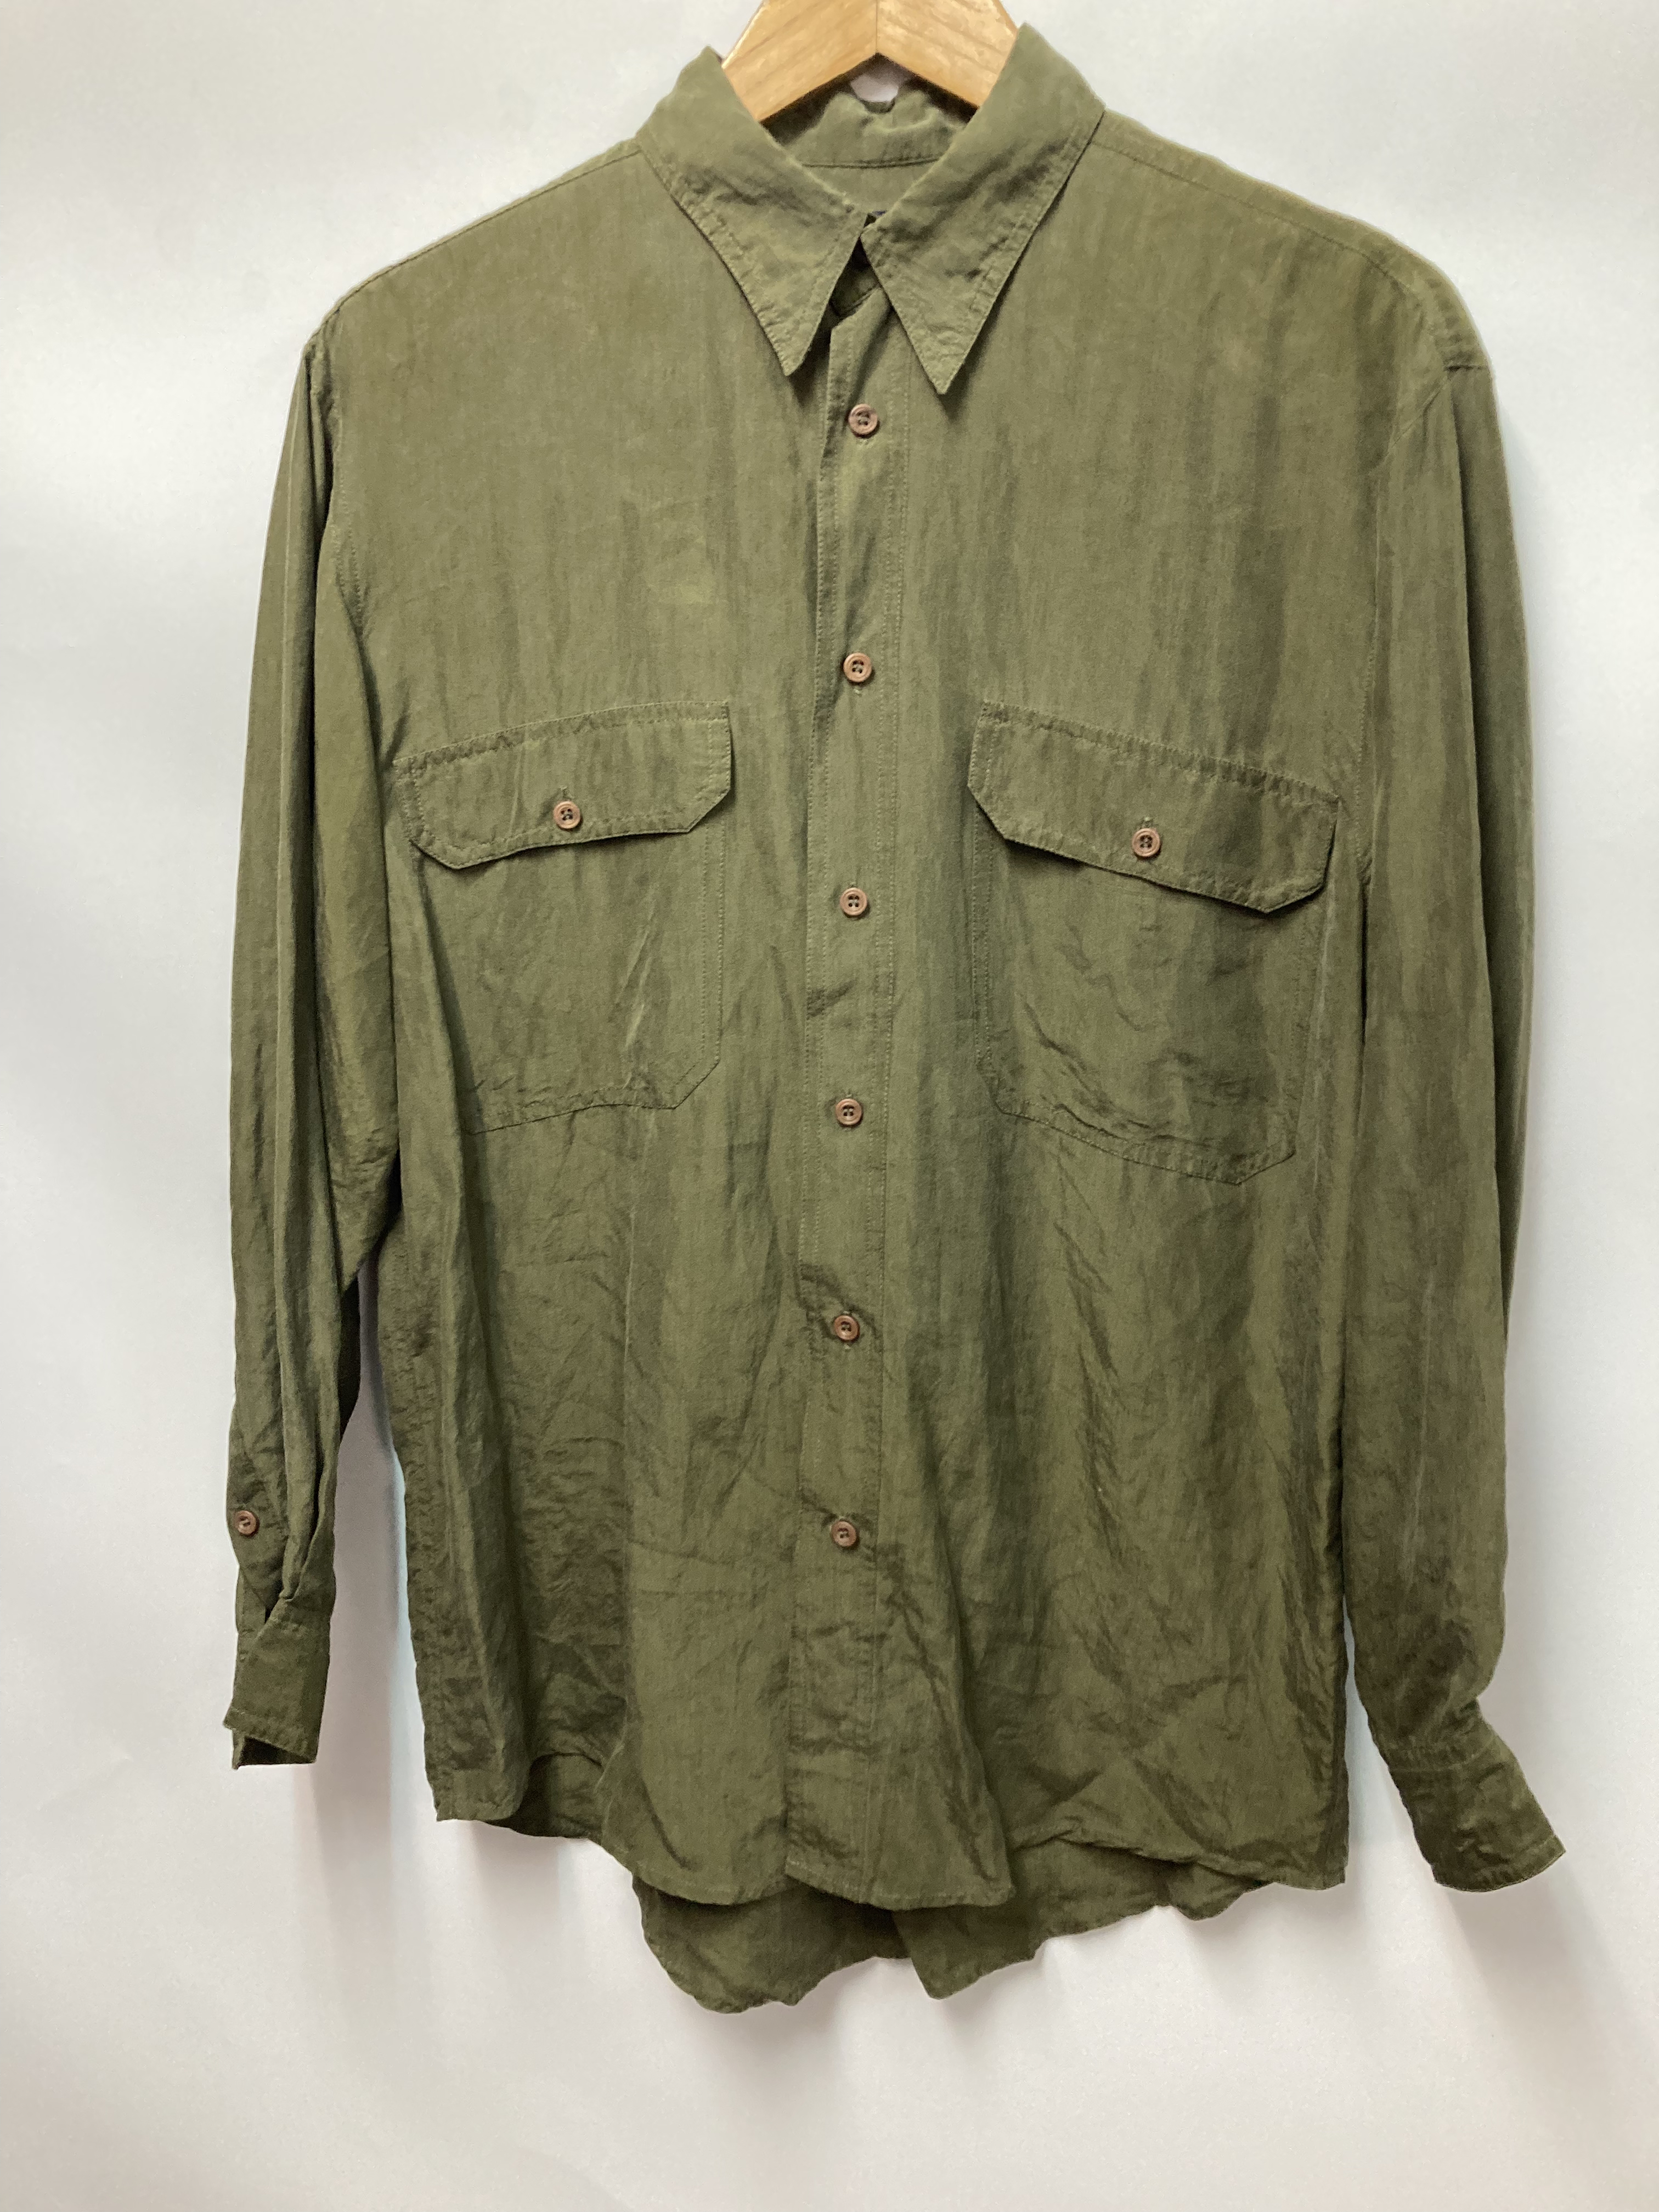 90's モード レトロ シルク100% 切替カラー 長袖シャツ Lサイズ - シャツ